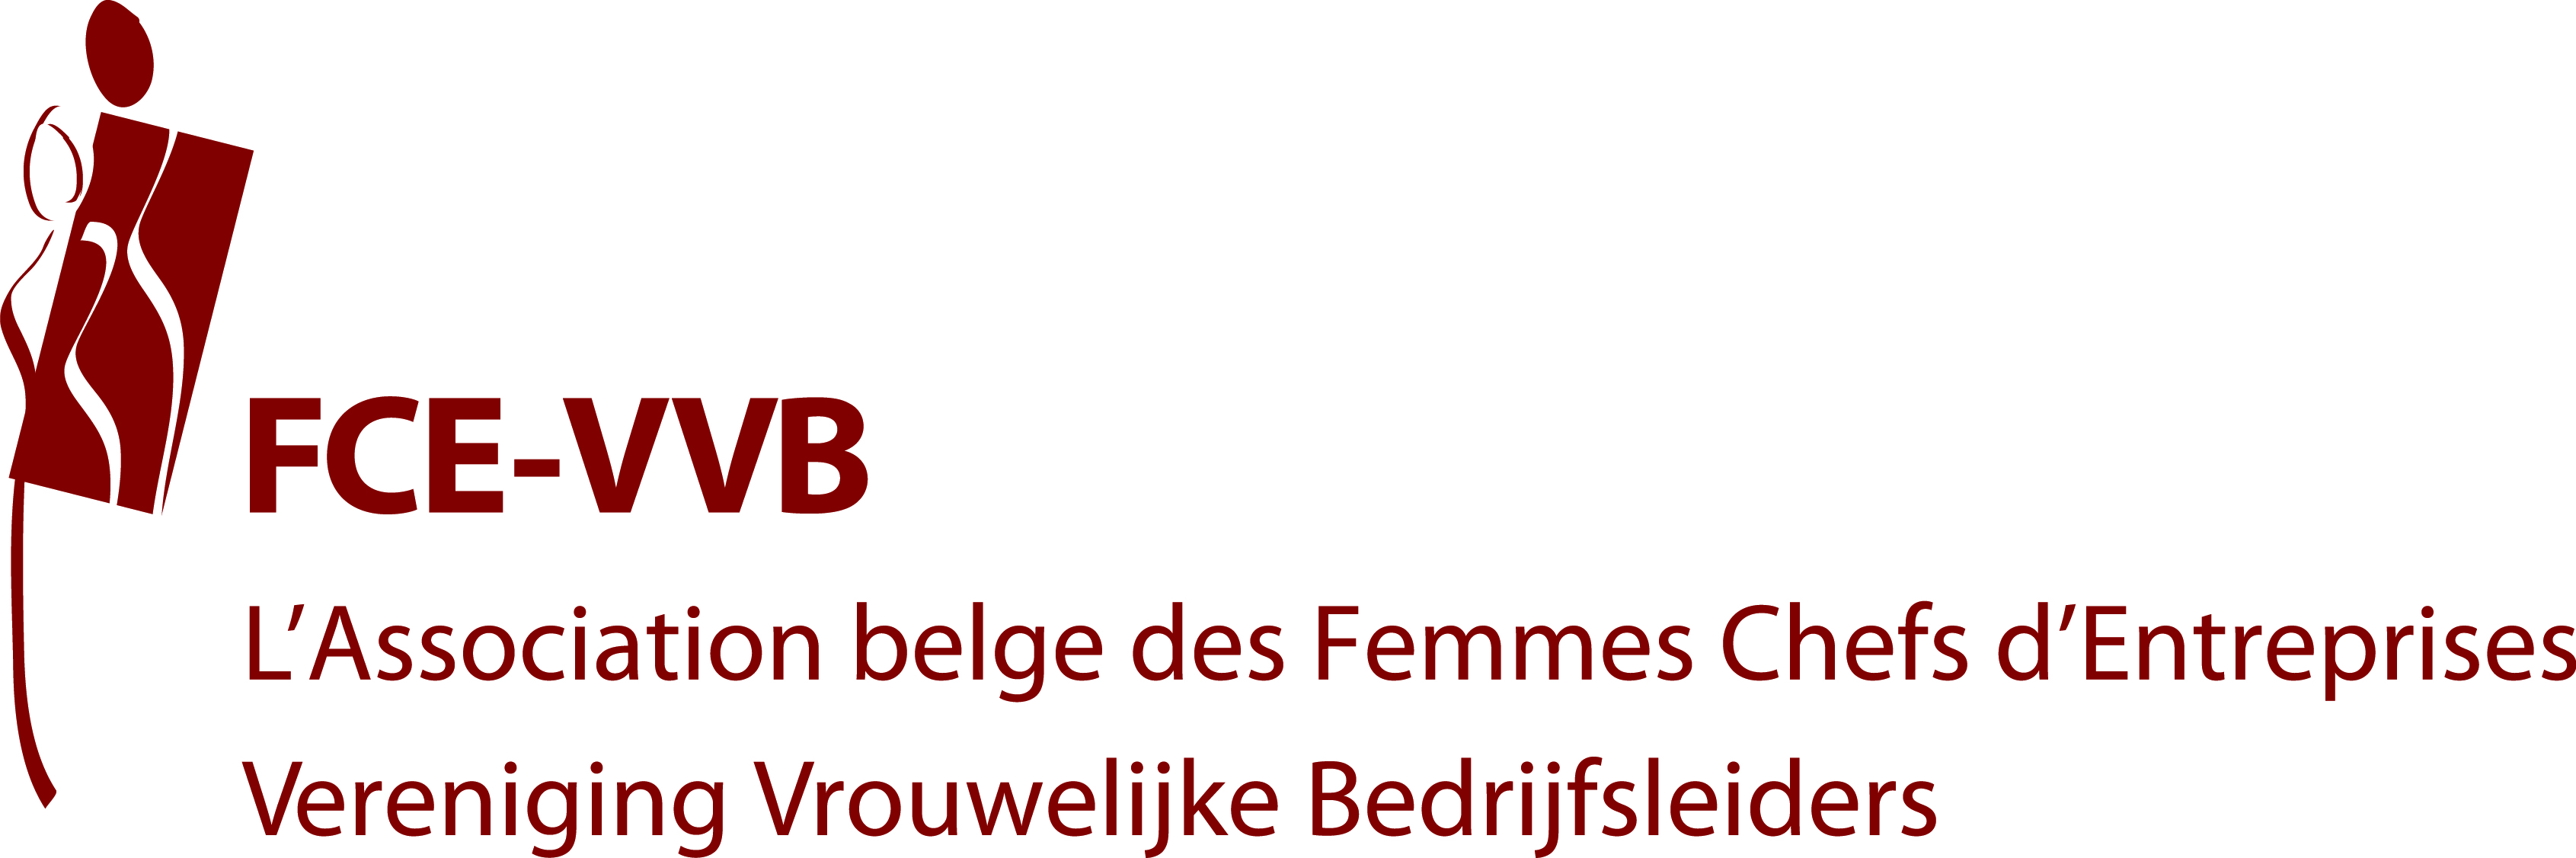 logo fce-vvb